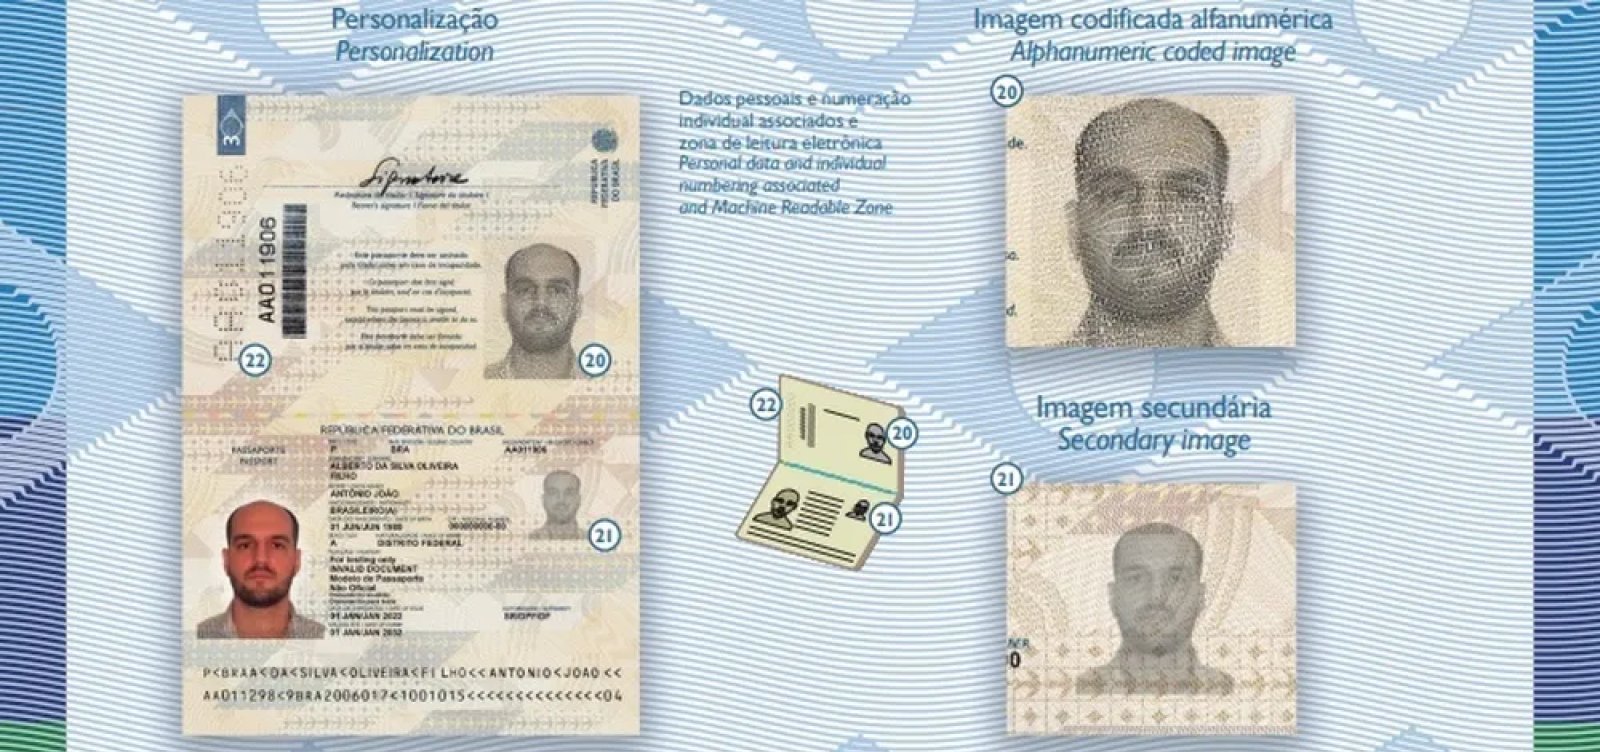 Novo modelo do passaporte brasileiro começa a ser emitido nesta terça-feira